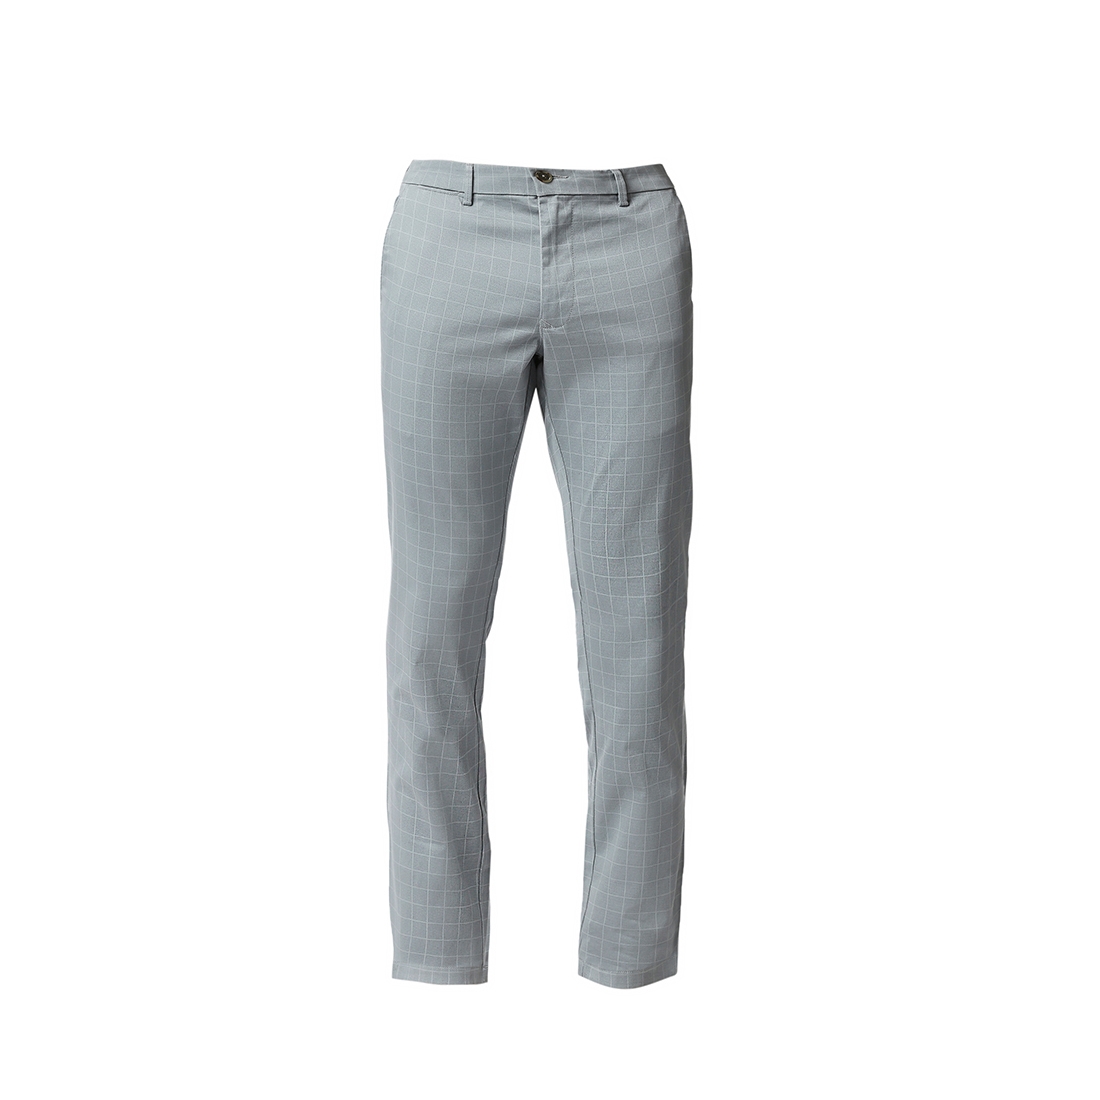 Basics | Men's Light Blue Cotton Blend Checked Trouser 5